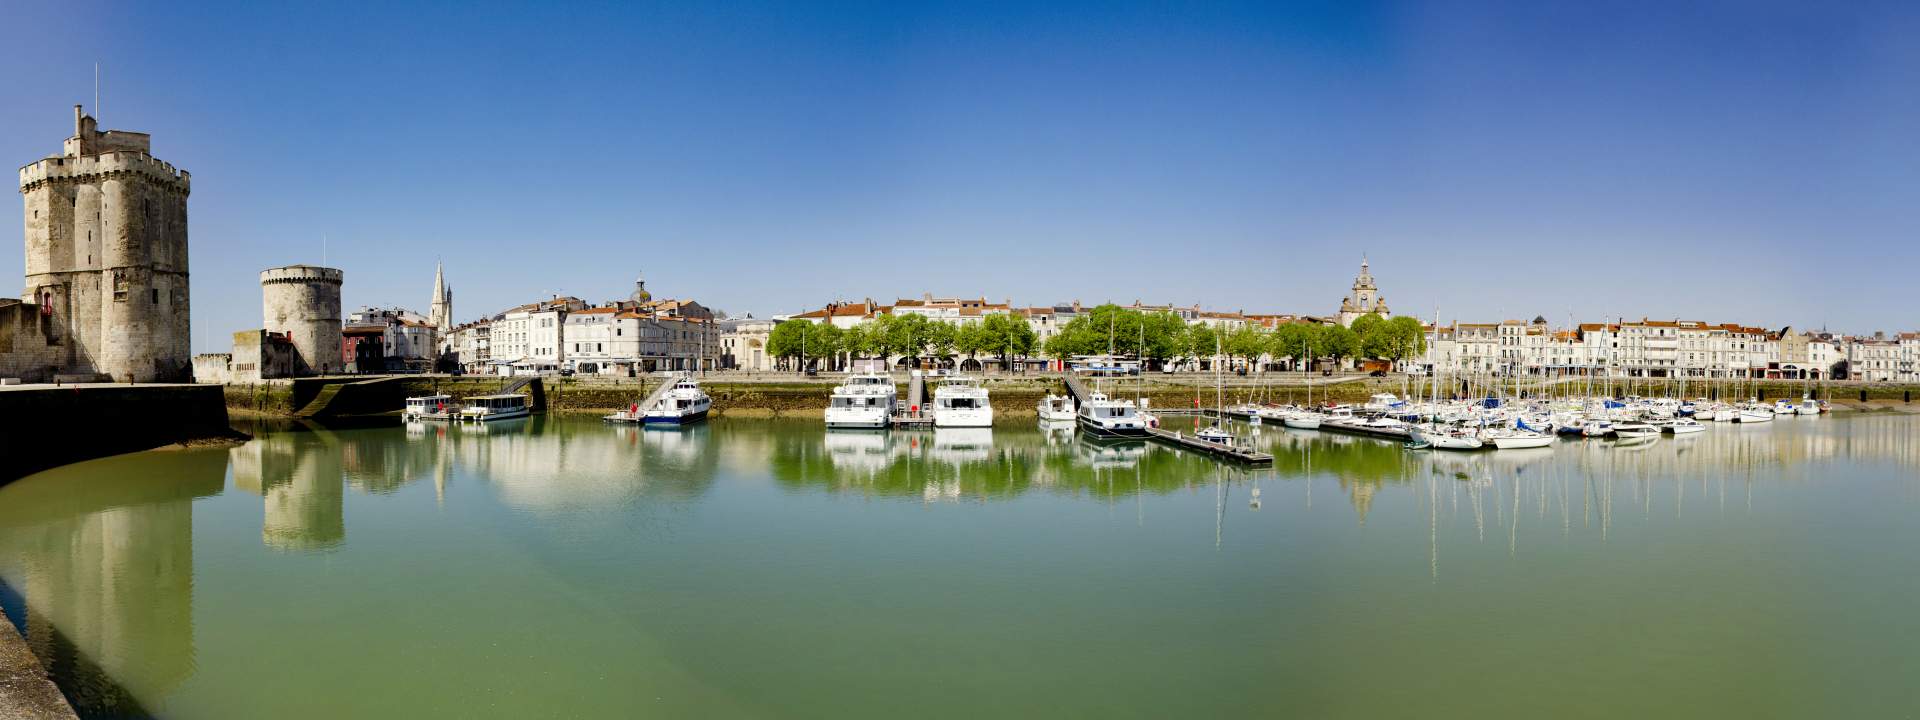 Imparare a navigare tra La Rochelle e la Vandea